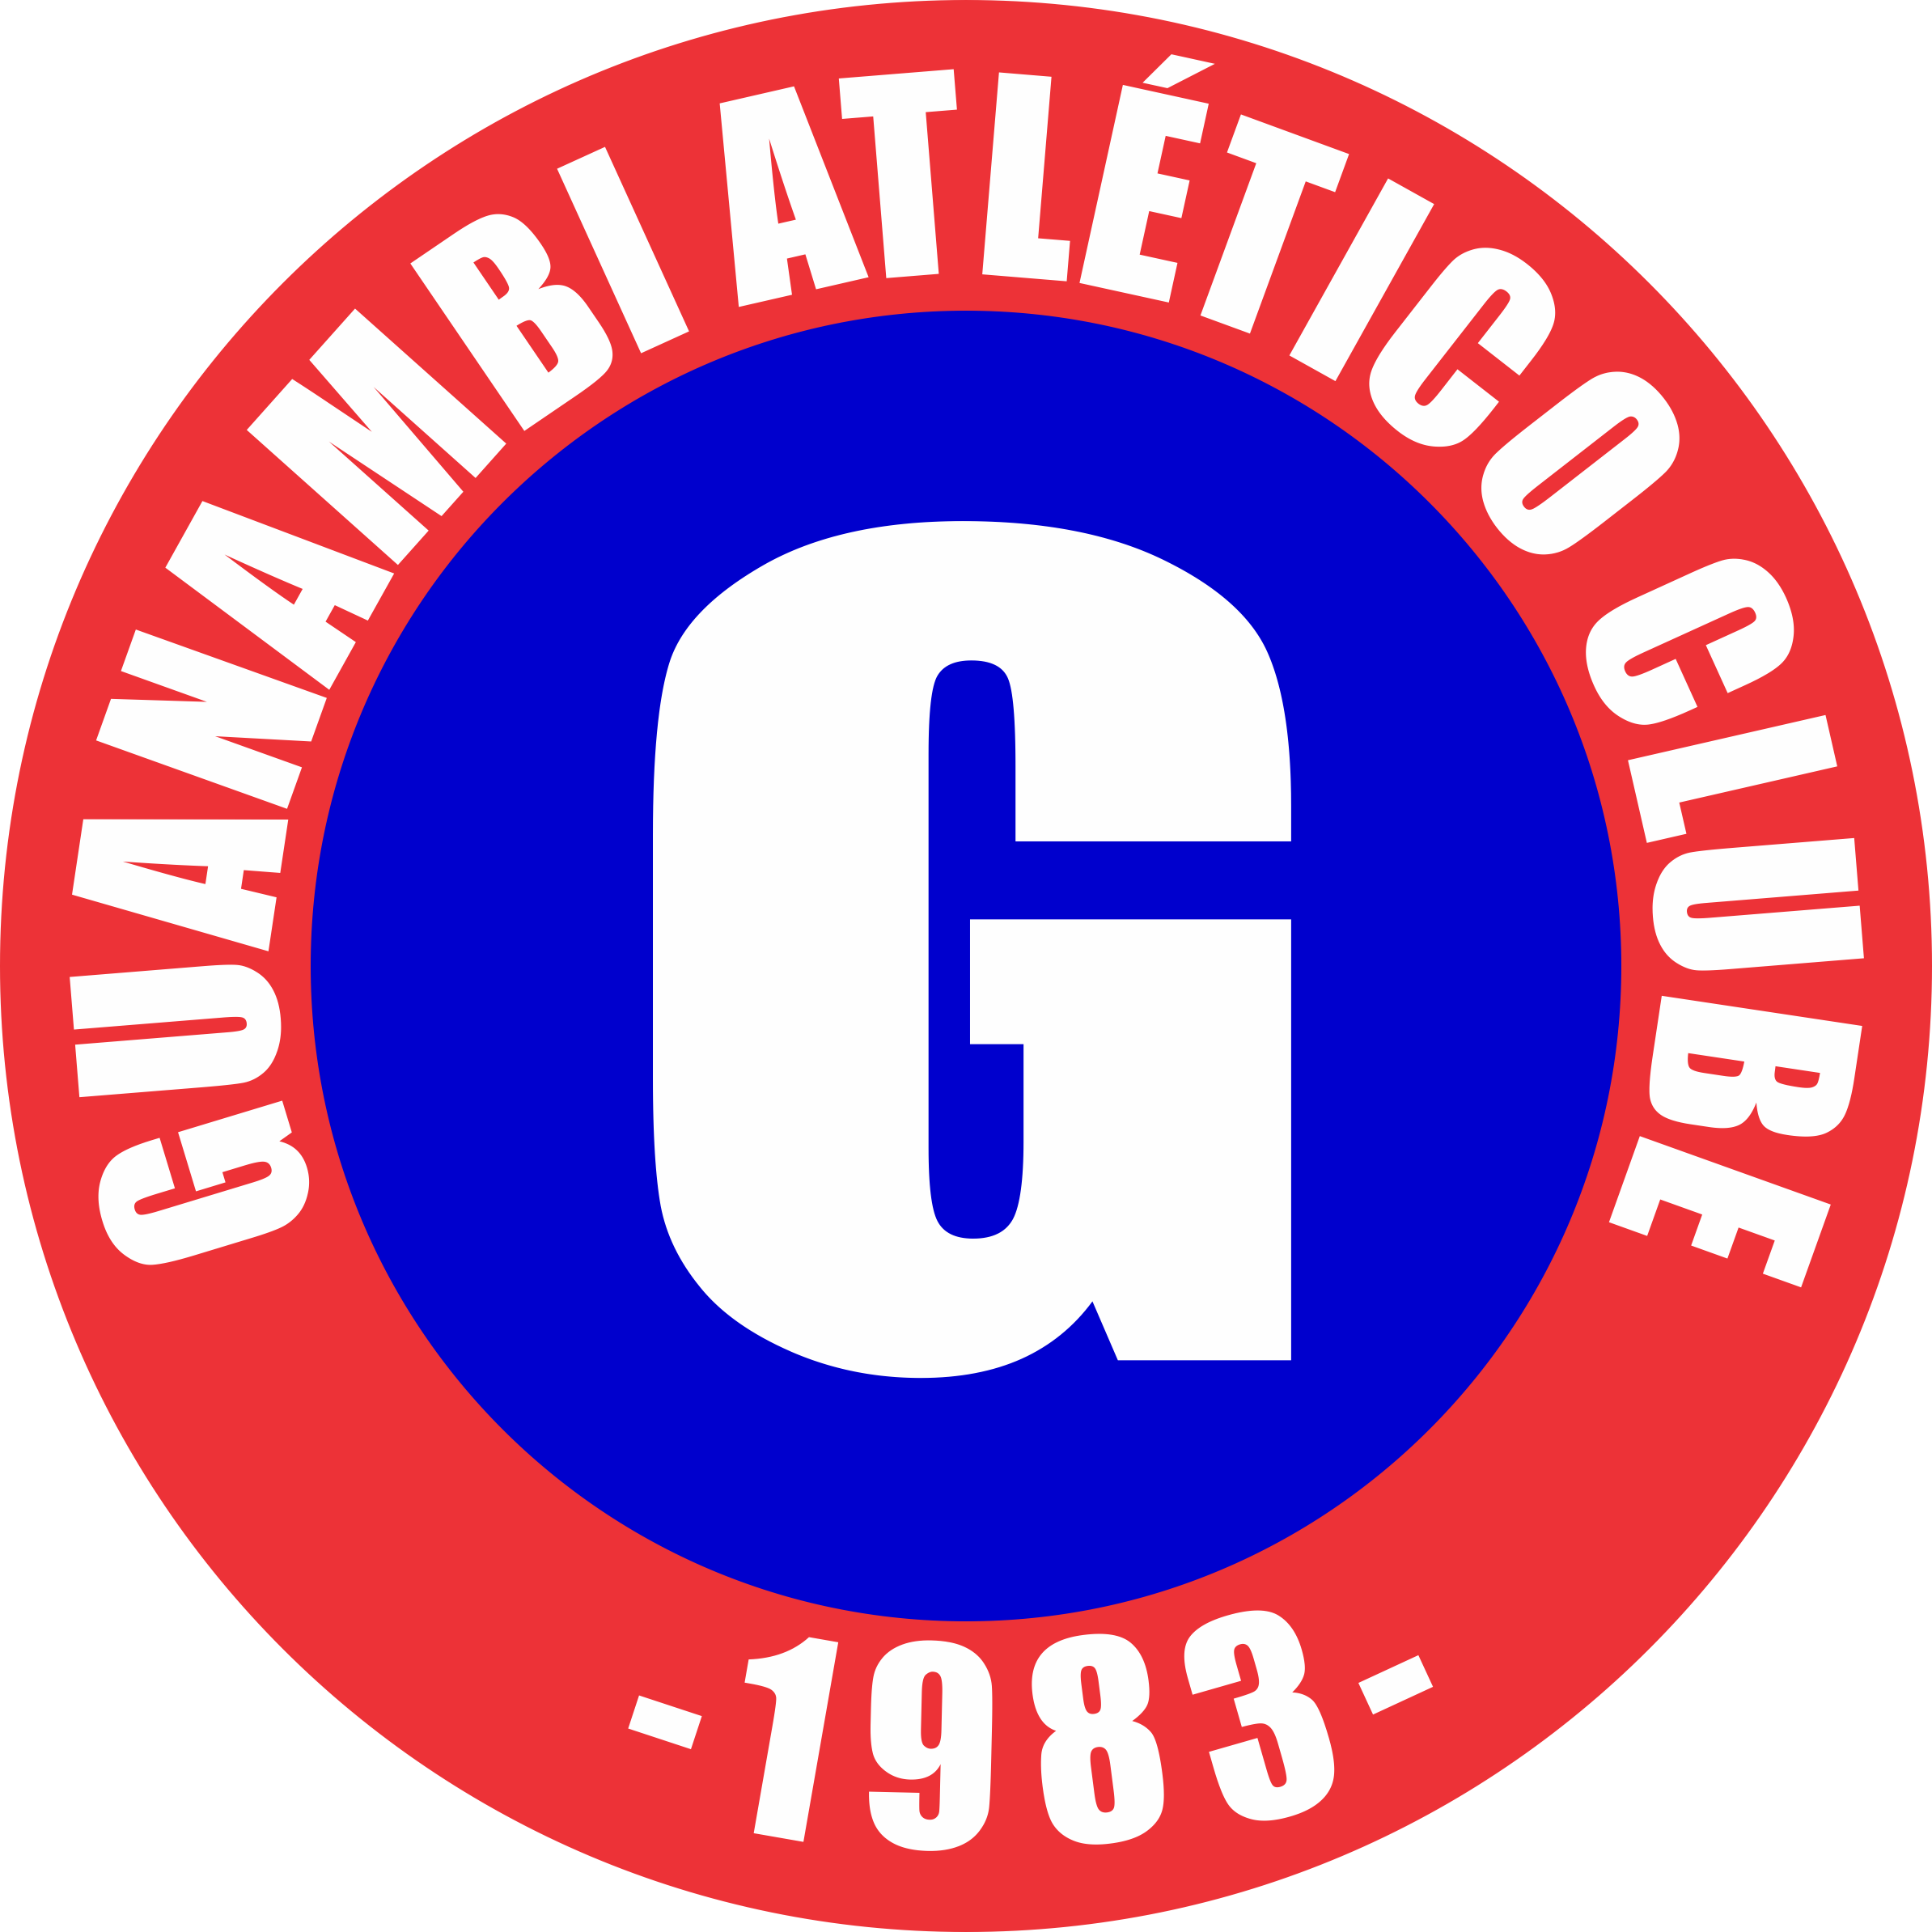 Guanambi